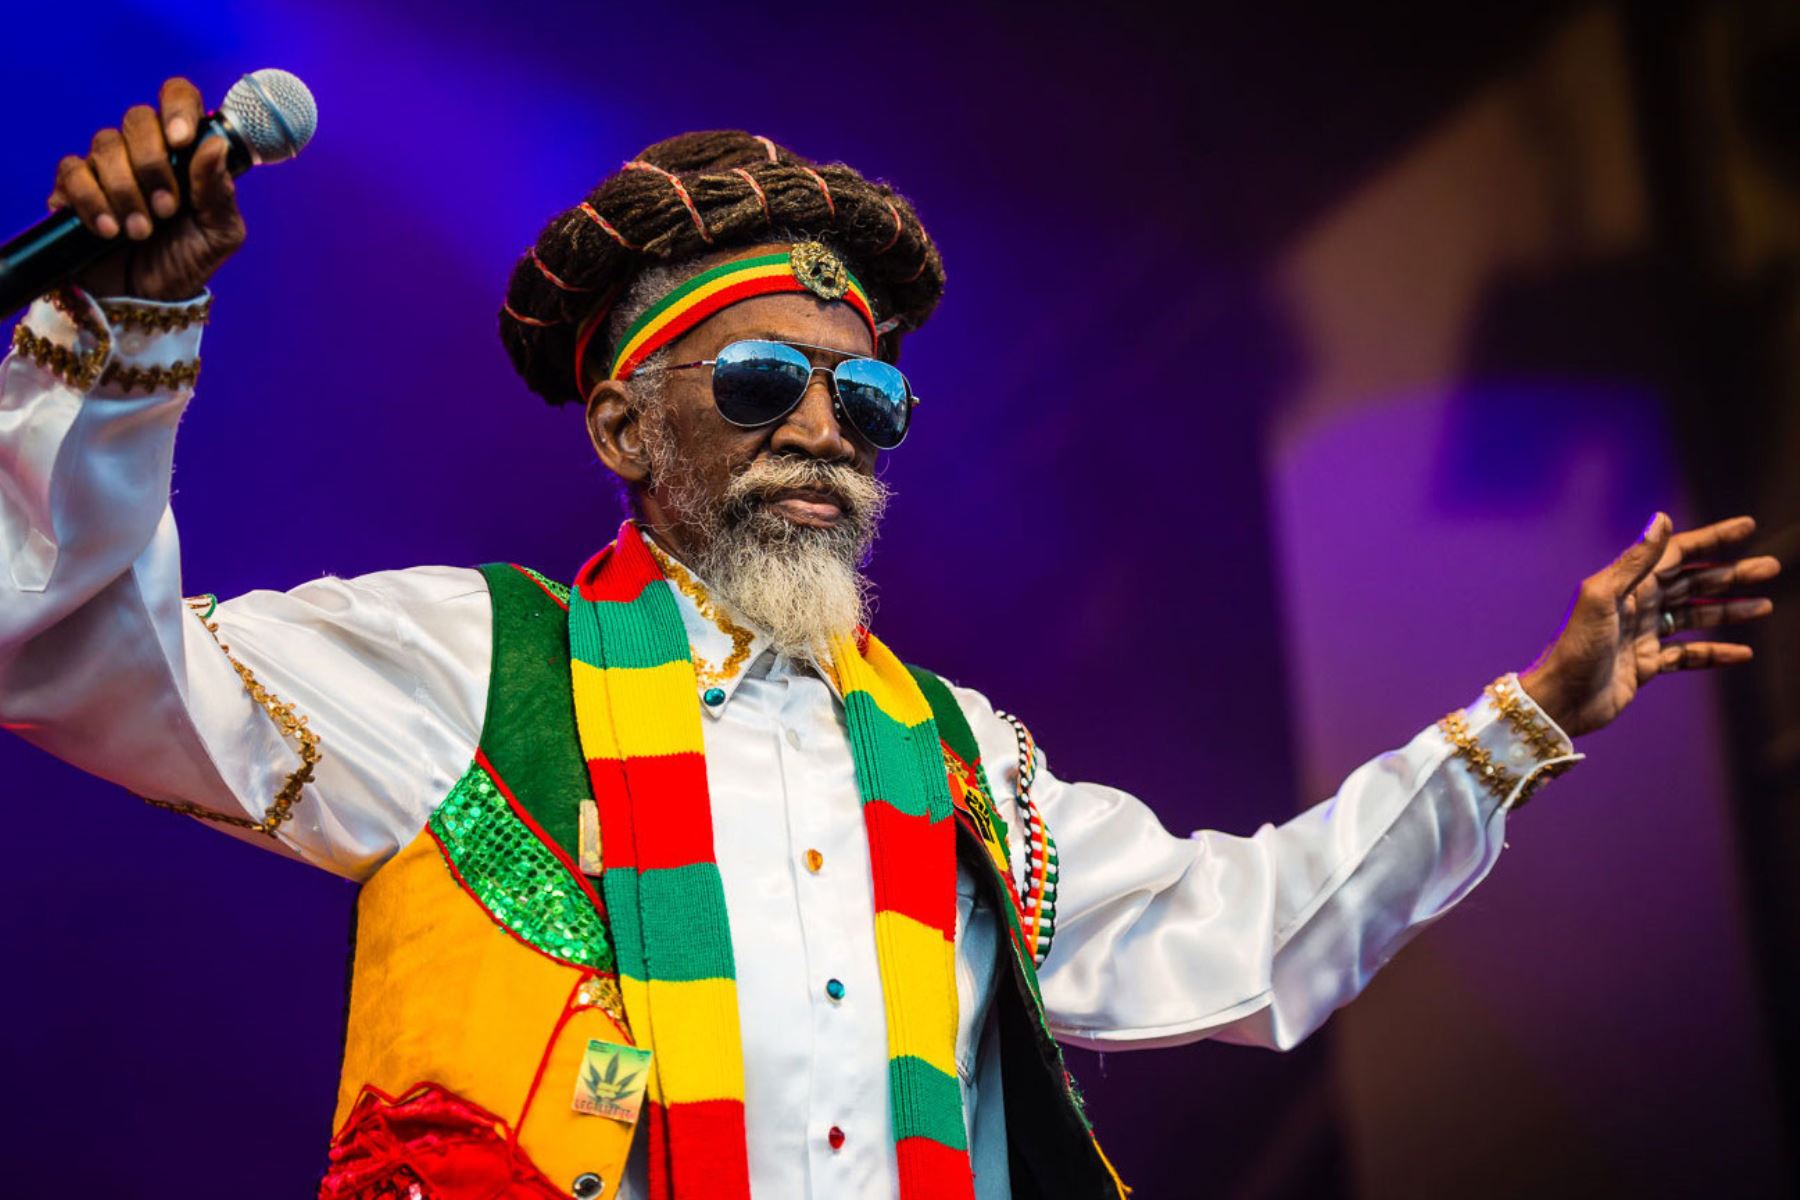 El artista ganó el Grammy por el mejor álbum de reggae en tres ocasiones en la década de los 90. Foto: bermudareal.com